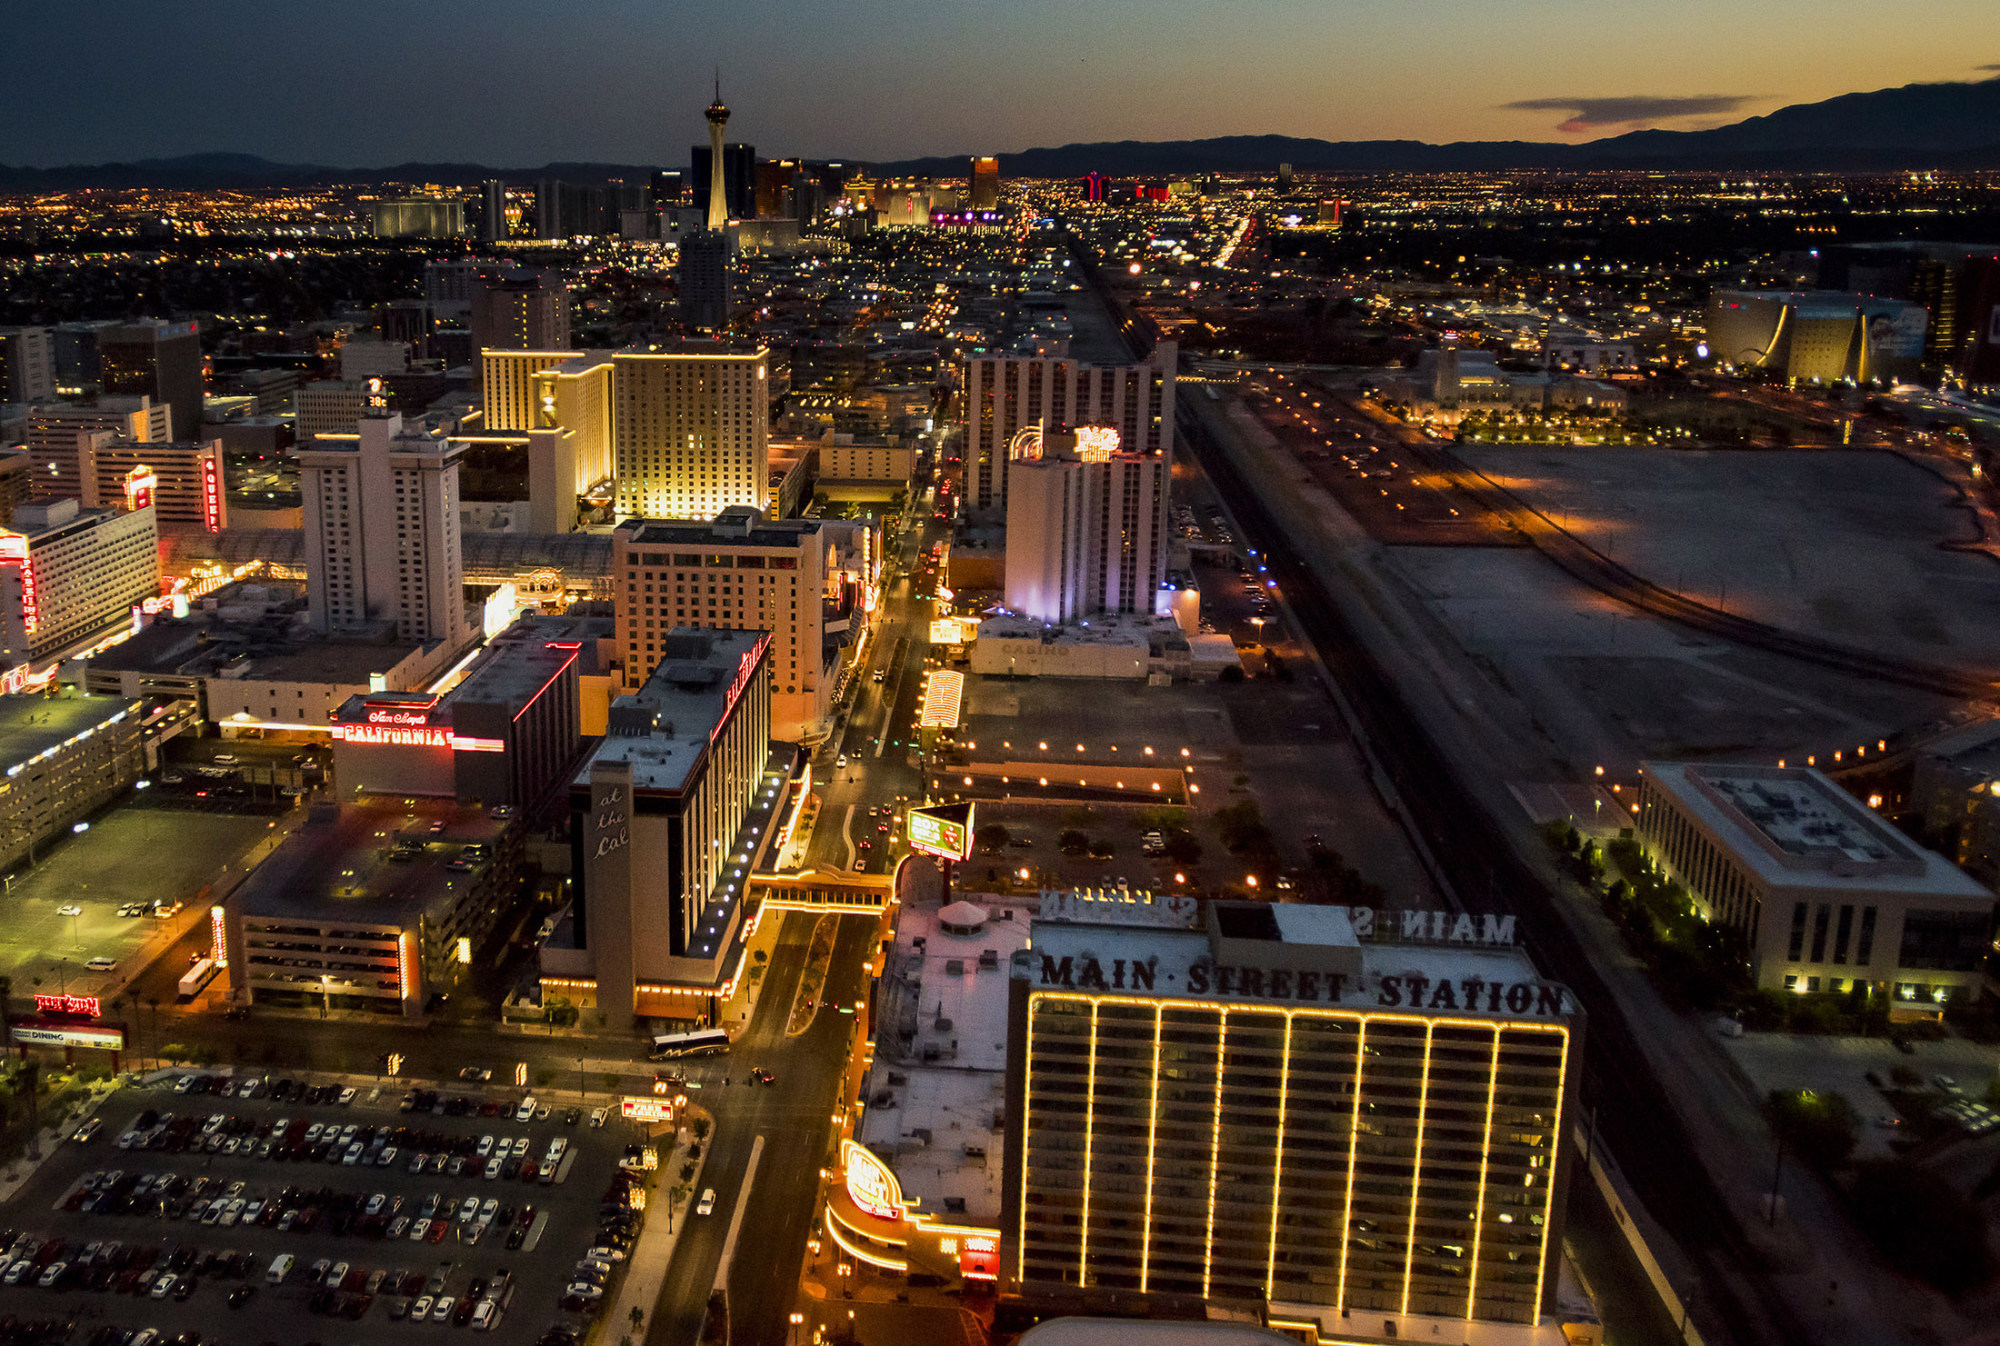 The 'strip' in Las Vegas, Nevada.
